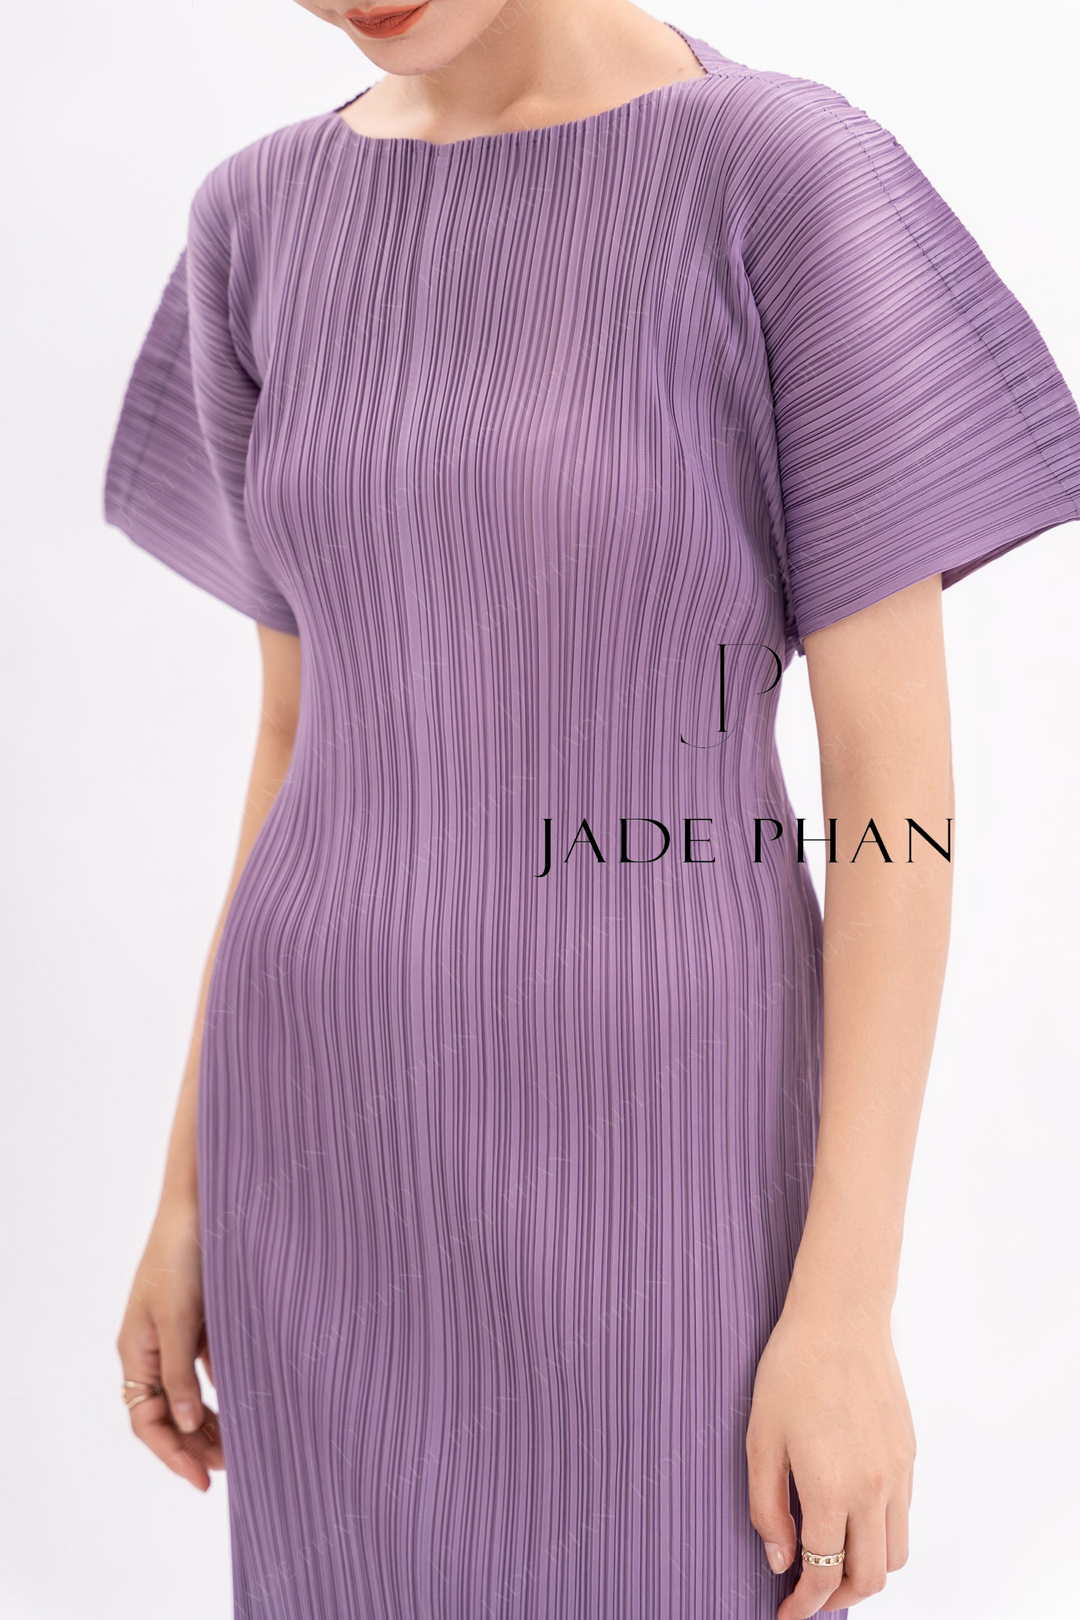 AMABELLA Pleated Dress - Medium Purple